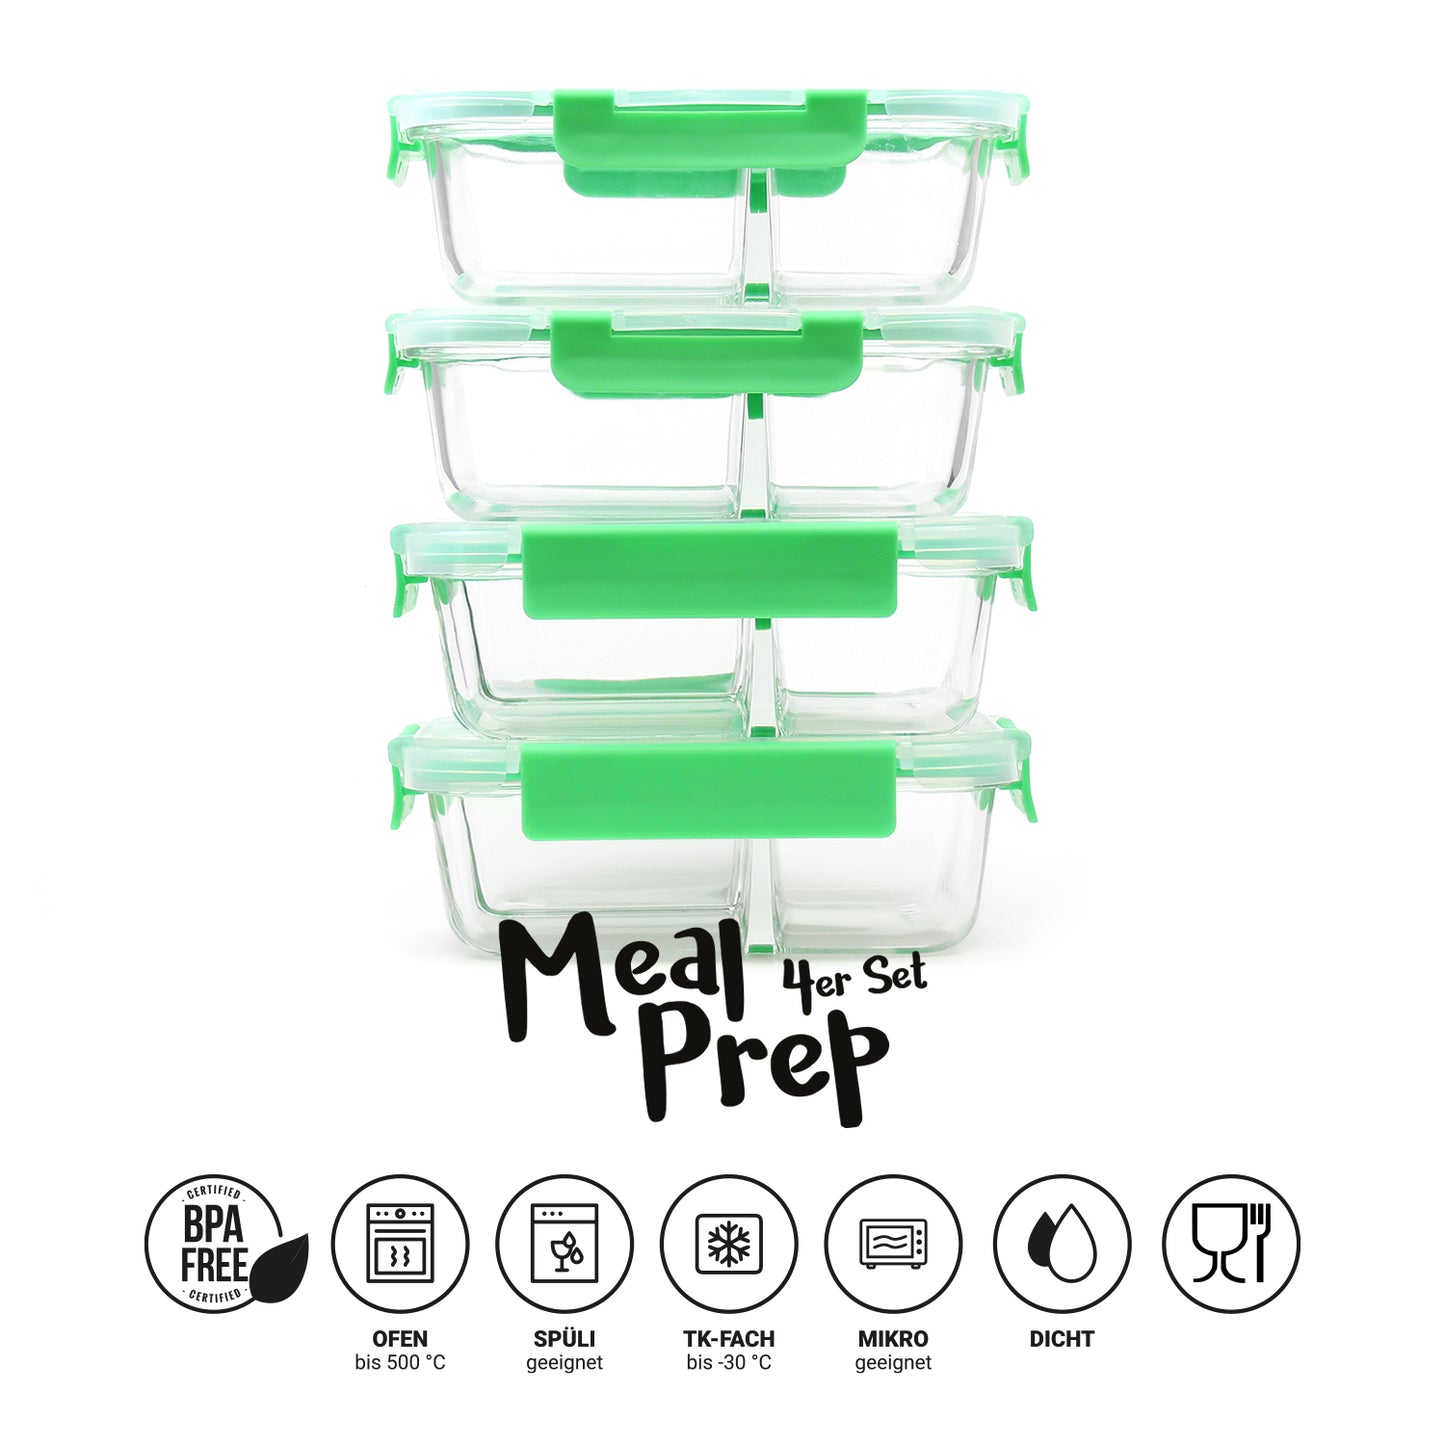 Meal Prep Frischhaltedosen aus Glas 4er Set (2er/3er-Teilung)